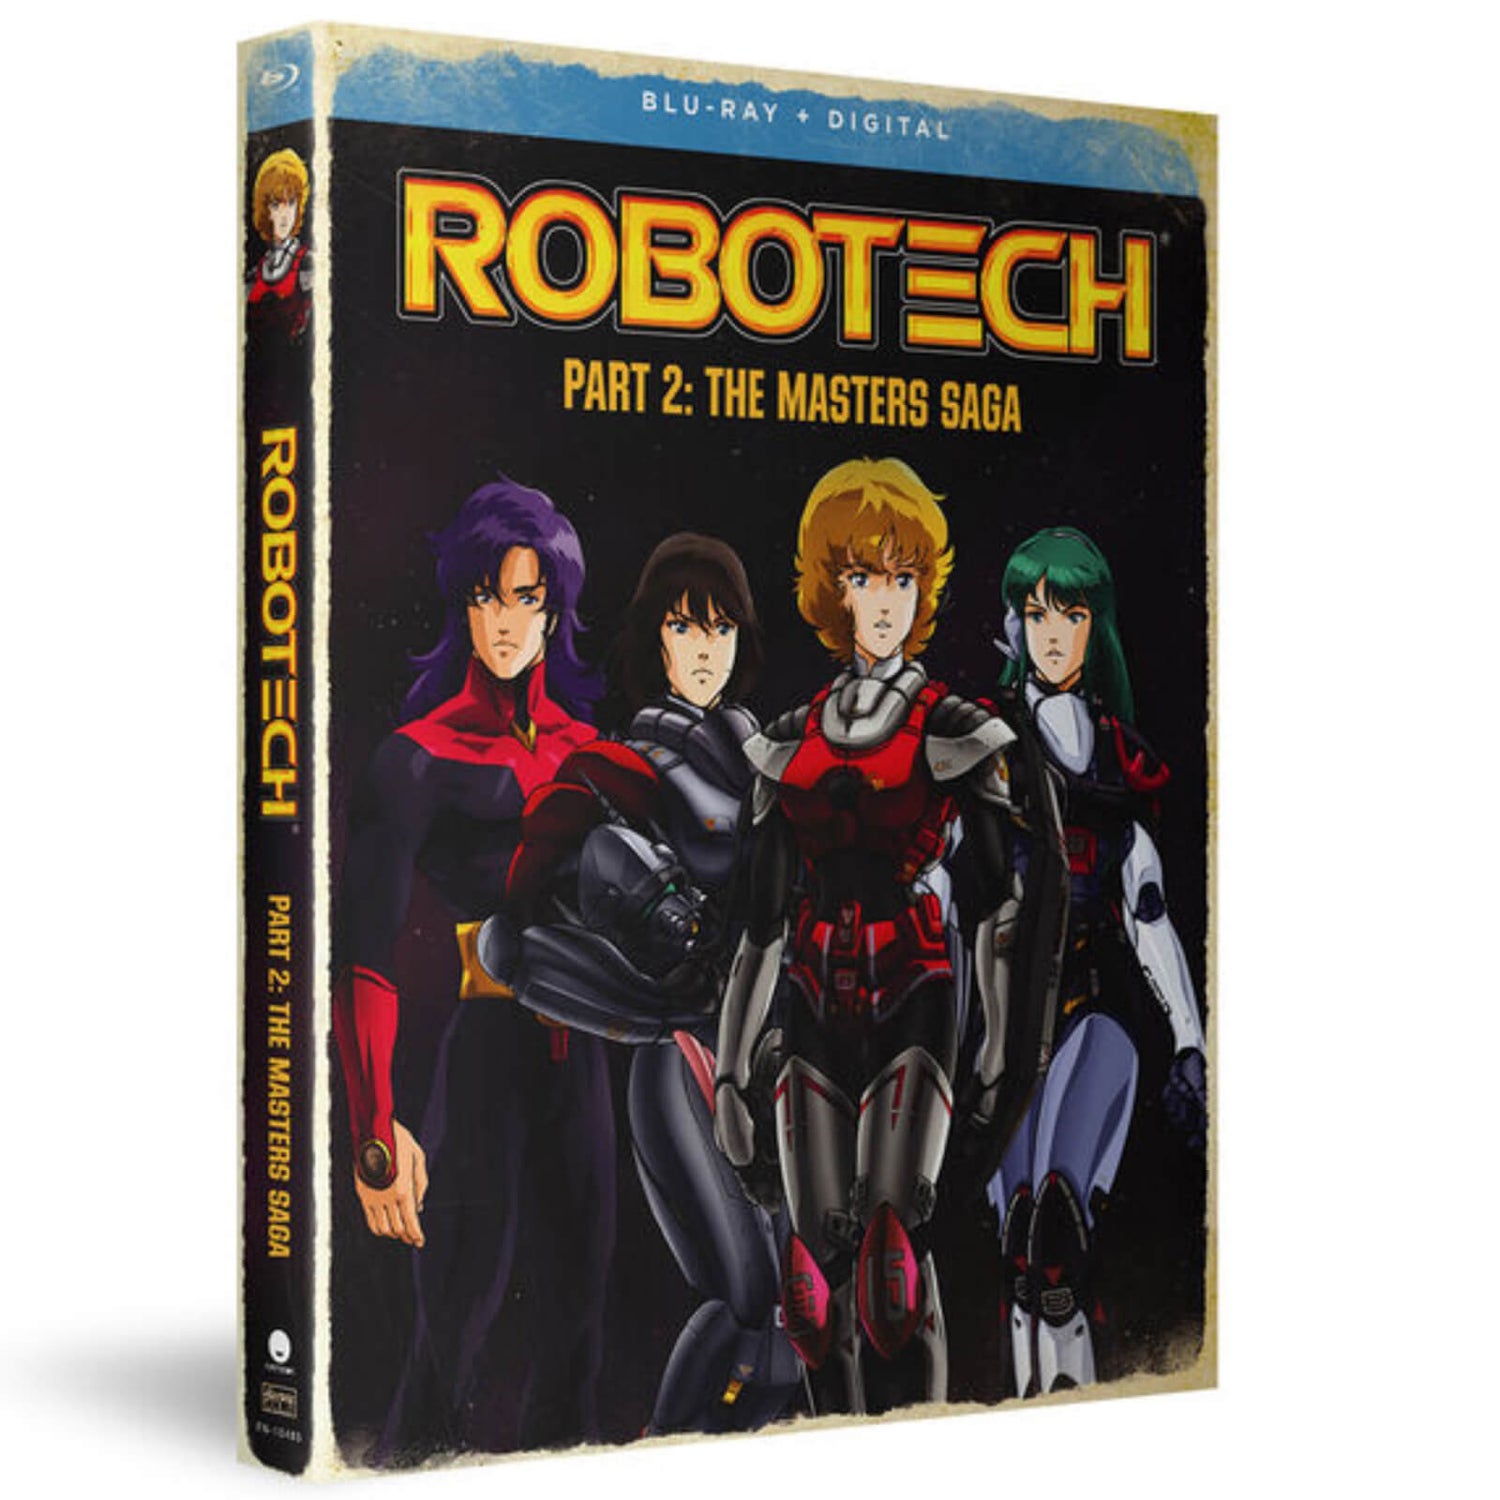 Robotech Part 2: The Masters Saga